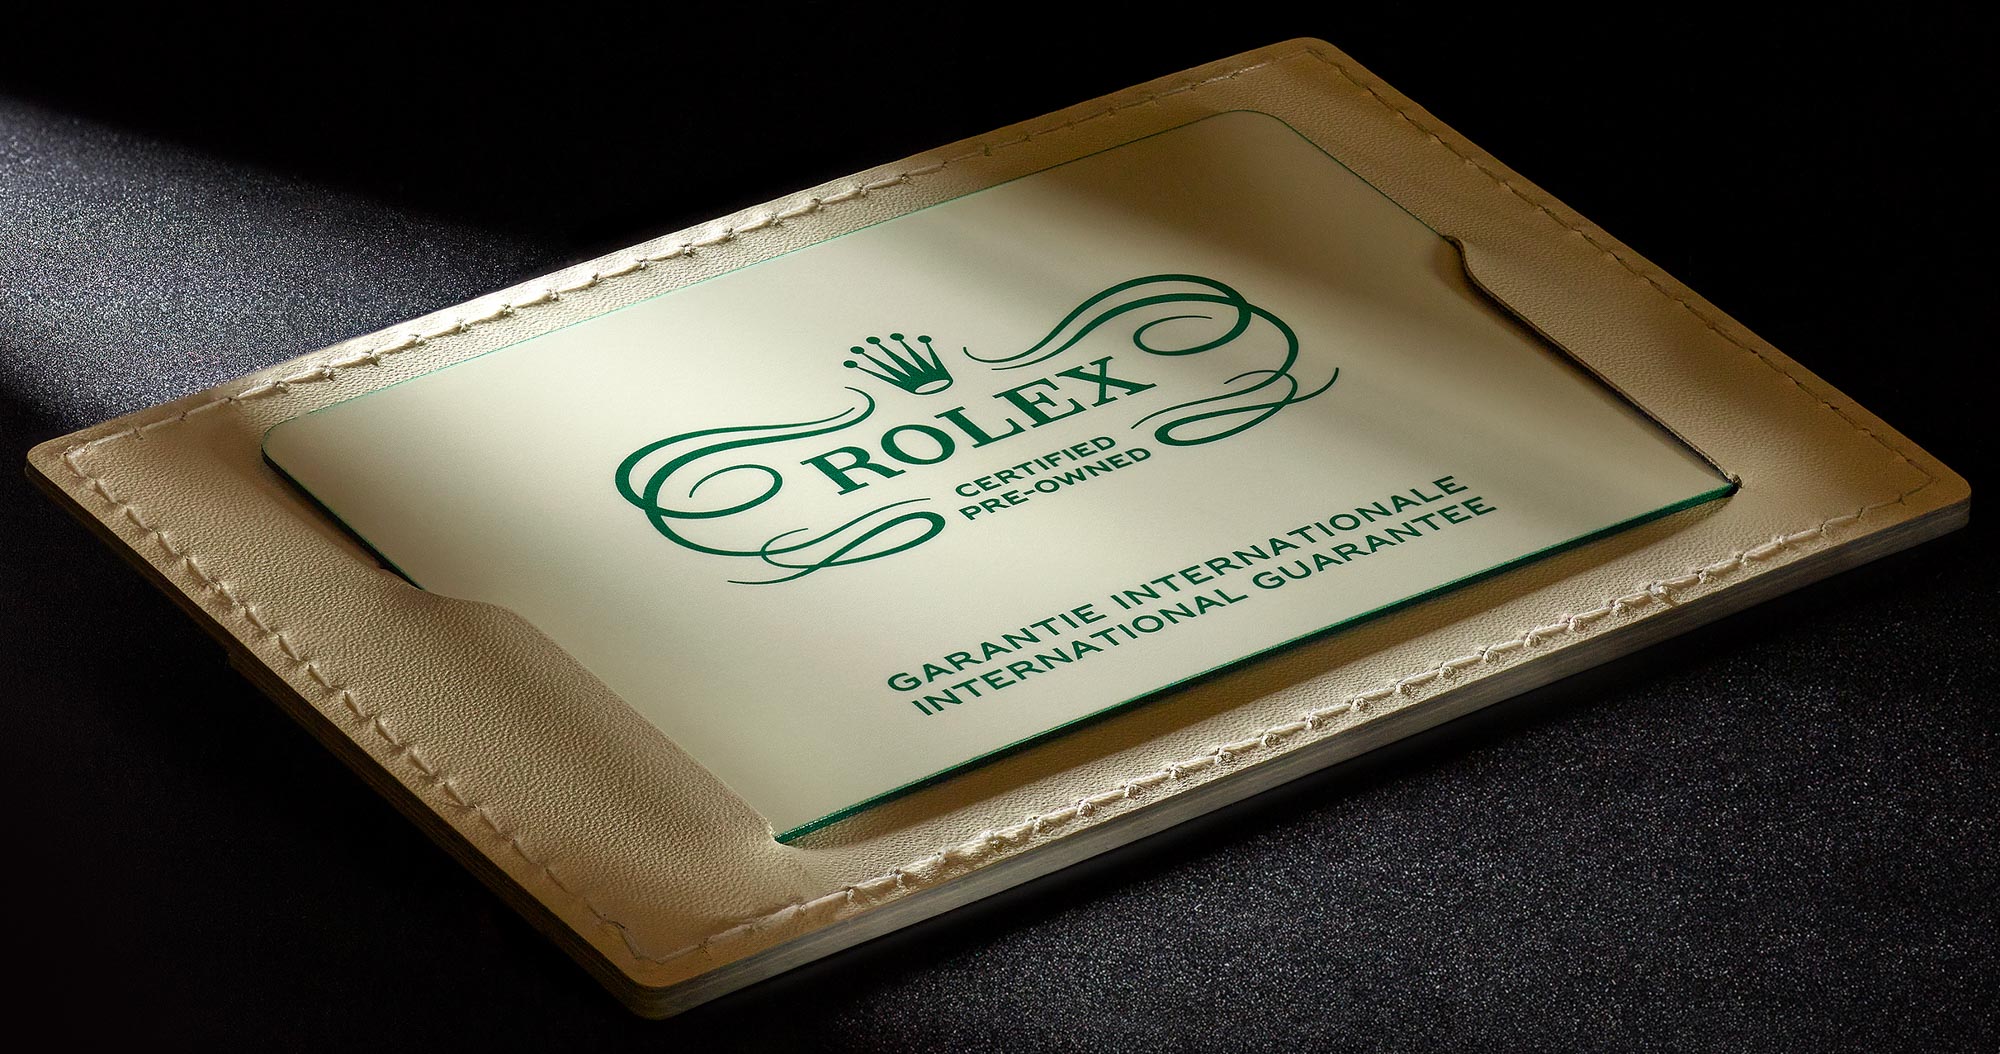 Rolex запускает программу "Rolex Certified Pre-Owned" (сертифицированные подержанные часы)